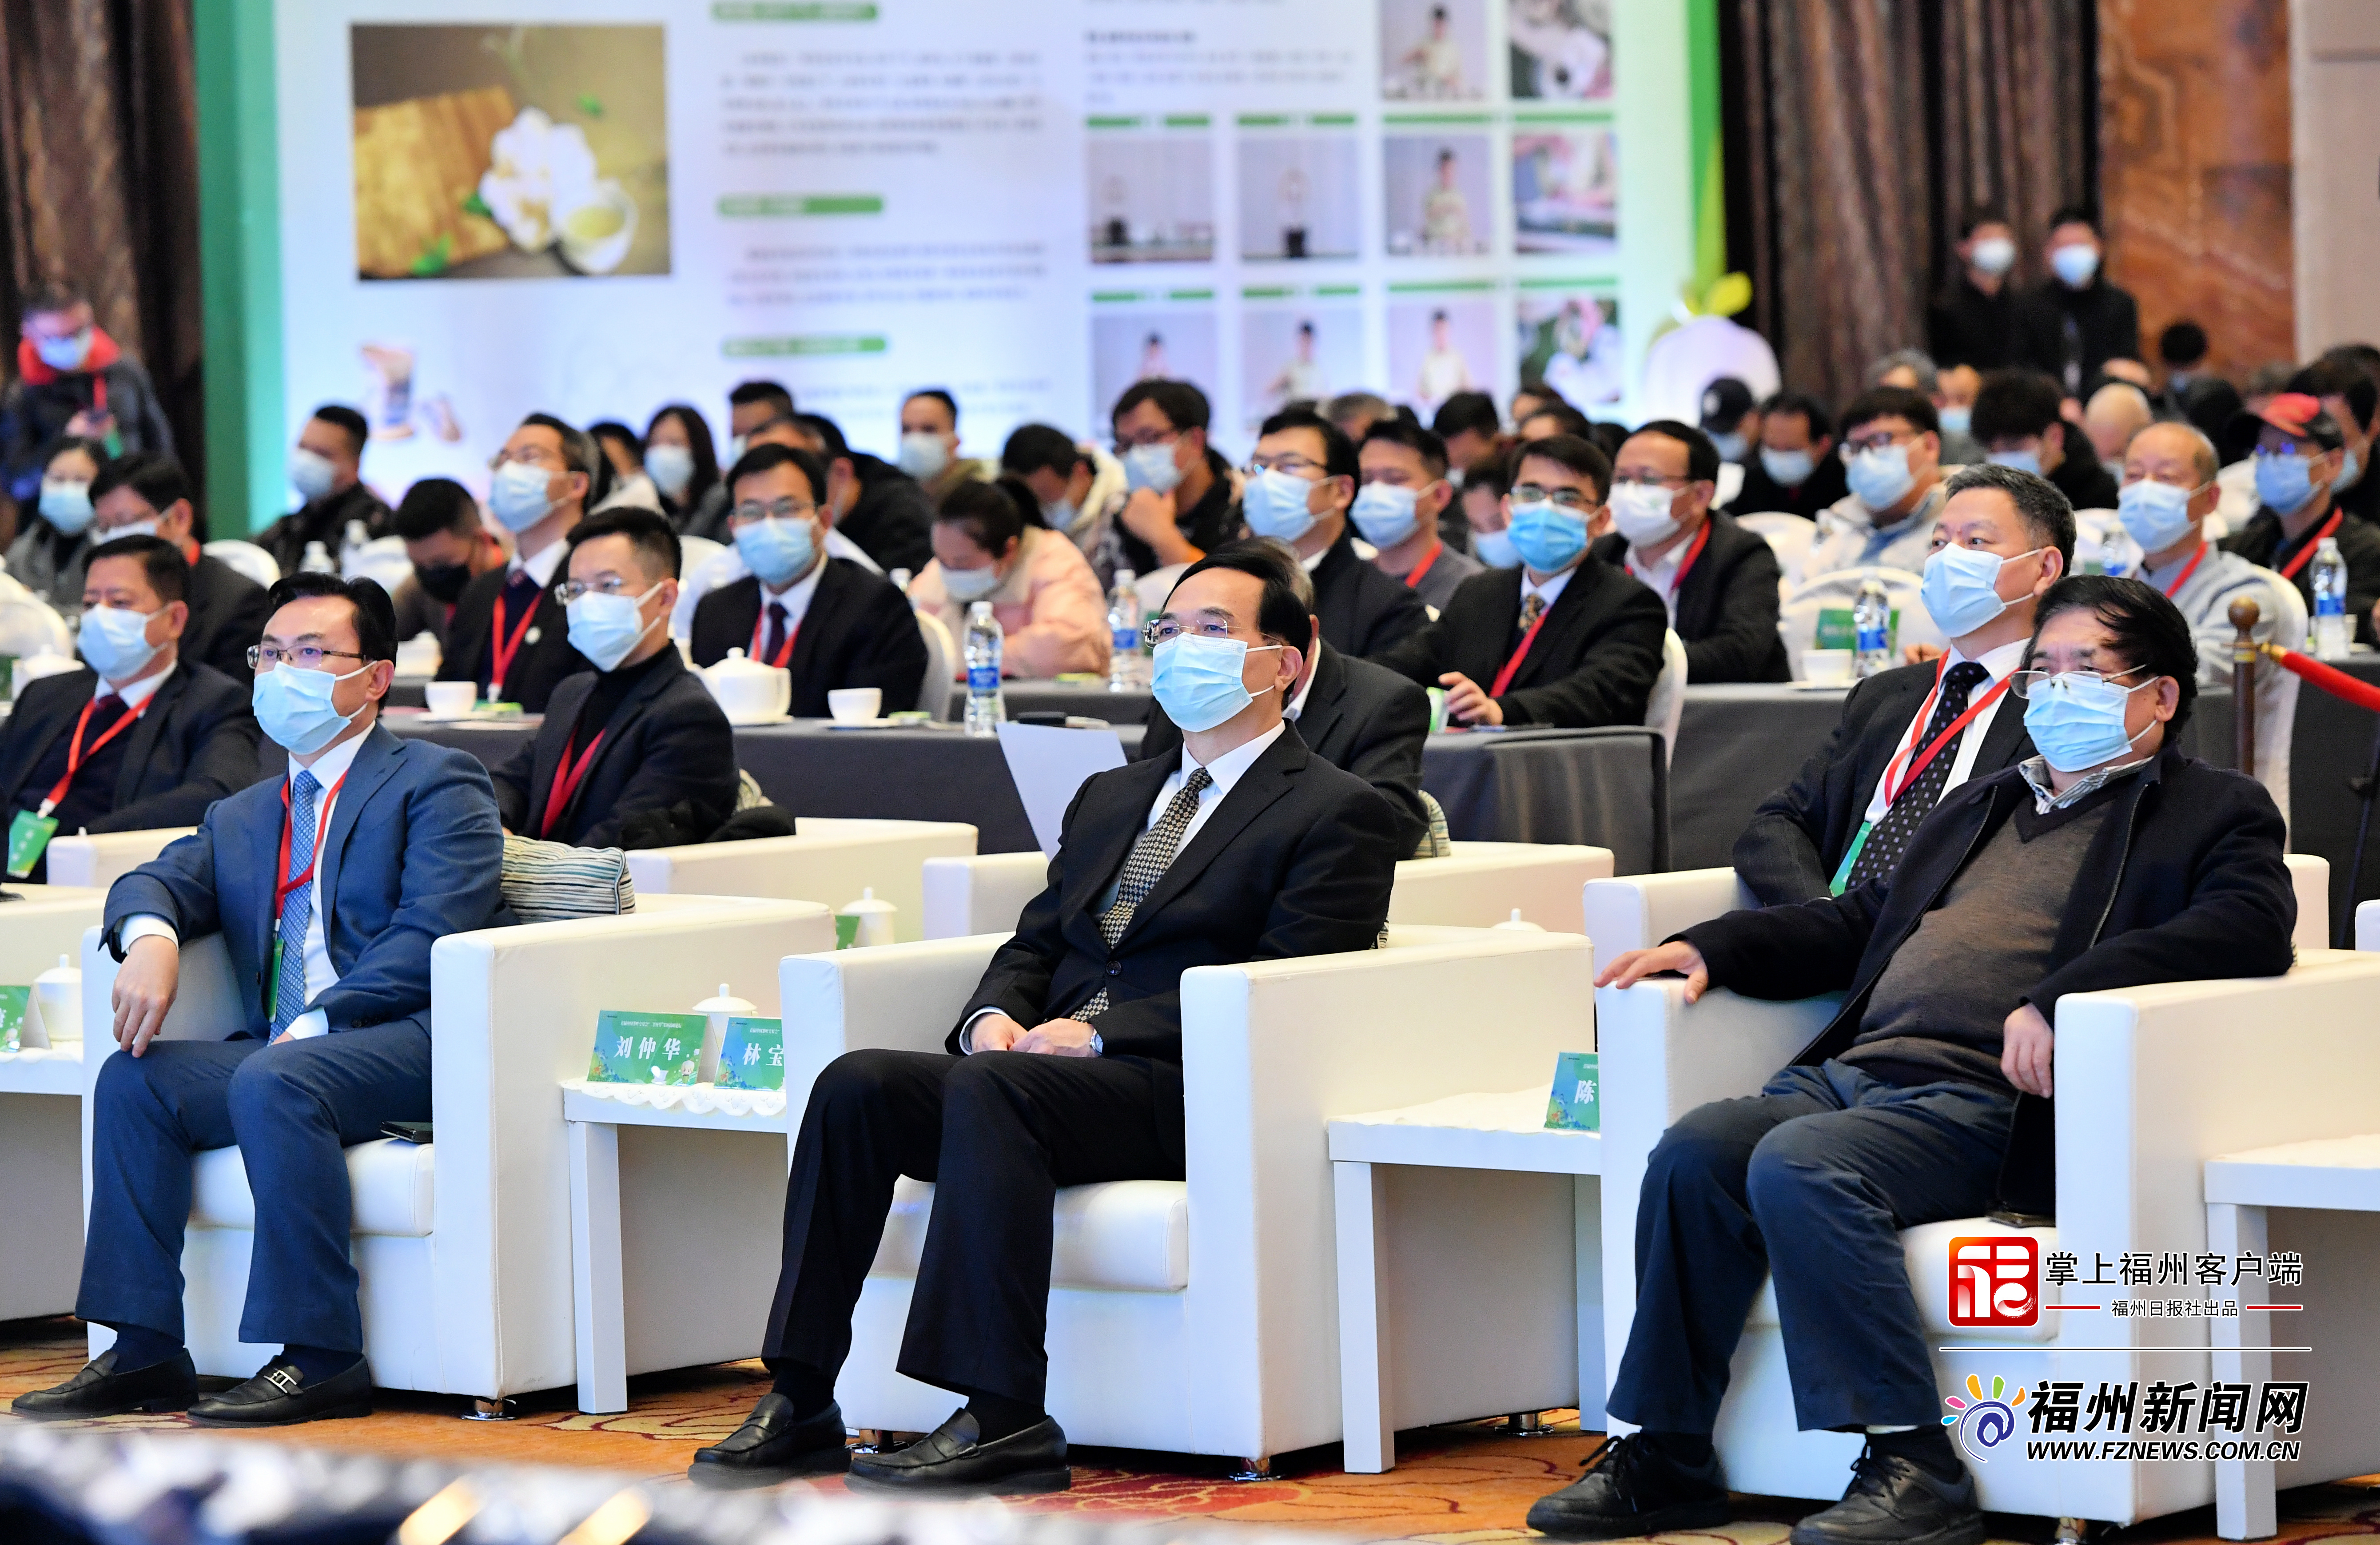 首届中国茶叶交易会“三茶统筹”发展高峰论坛举行